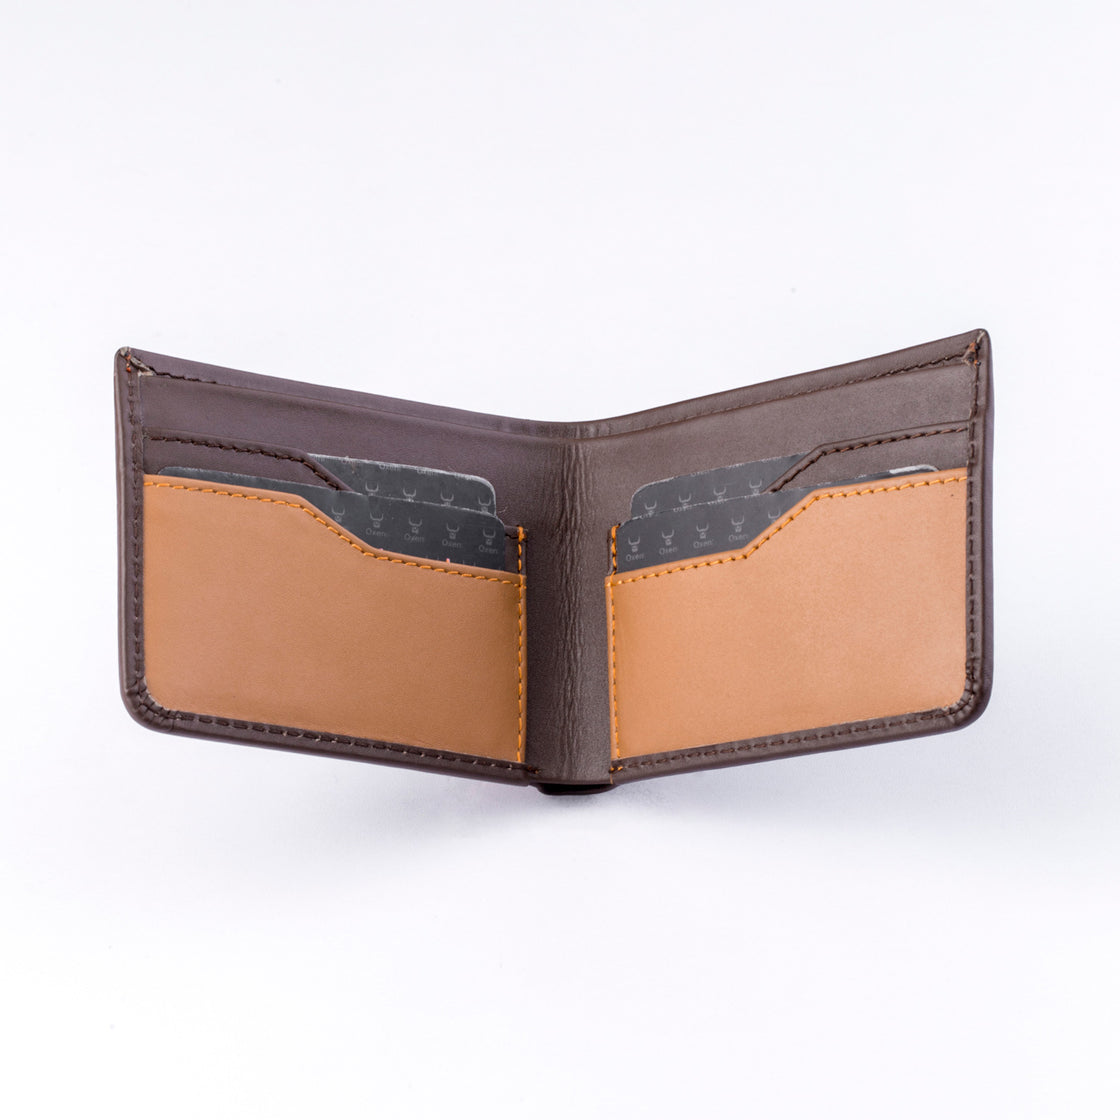 Folius Leather Wallet